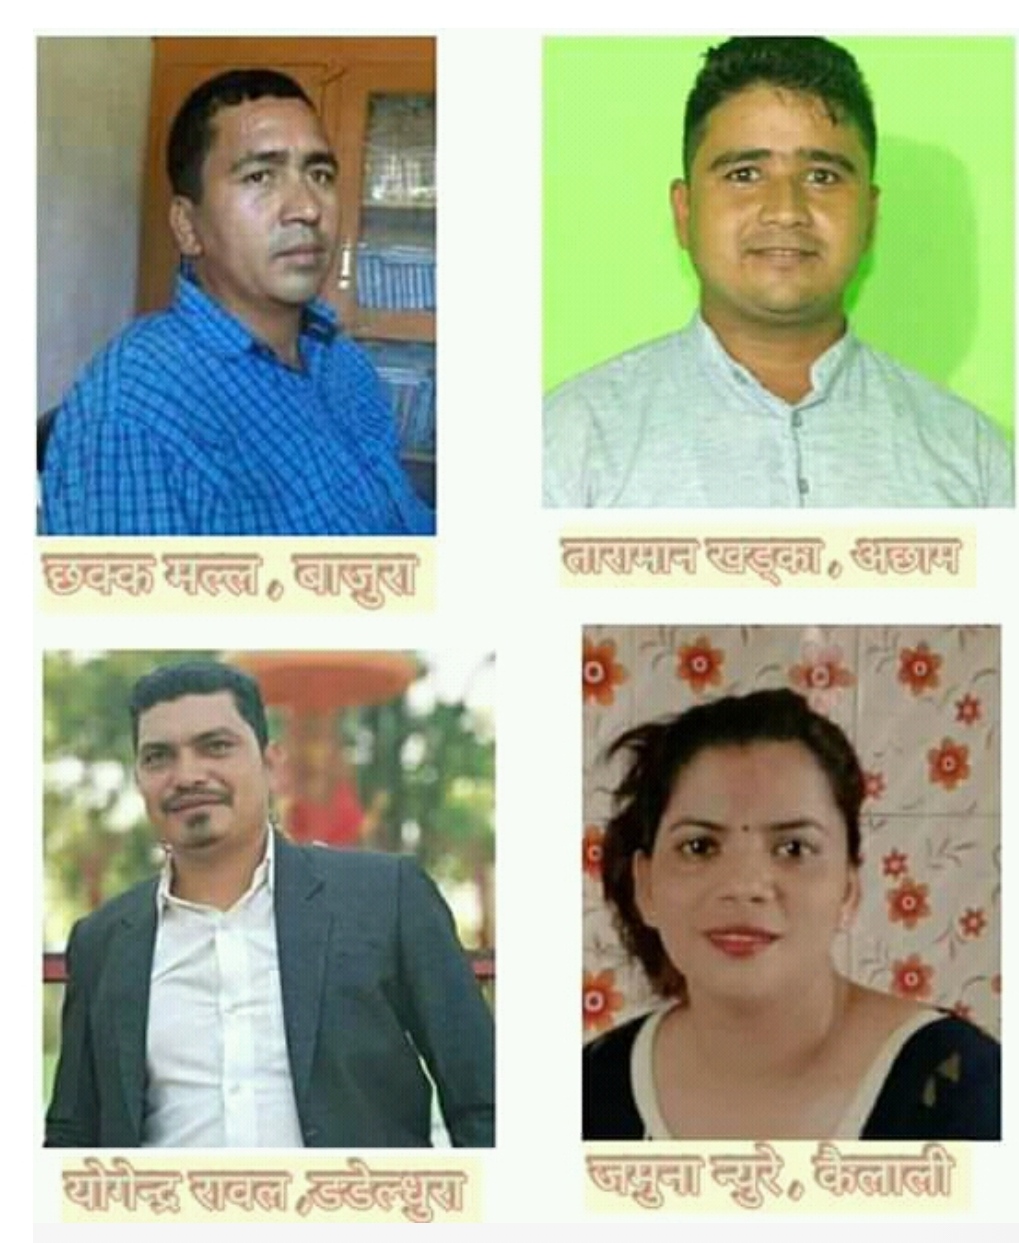 नेपाल प्रजातान्त्रिक महासंघ सूचना तथा प्रचार बिभाग, सुदुरपश्चिममा ४ सदस्य मनोनीत